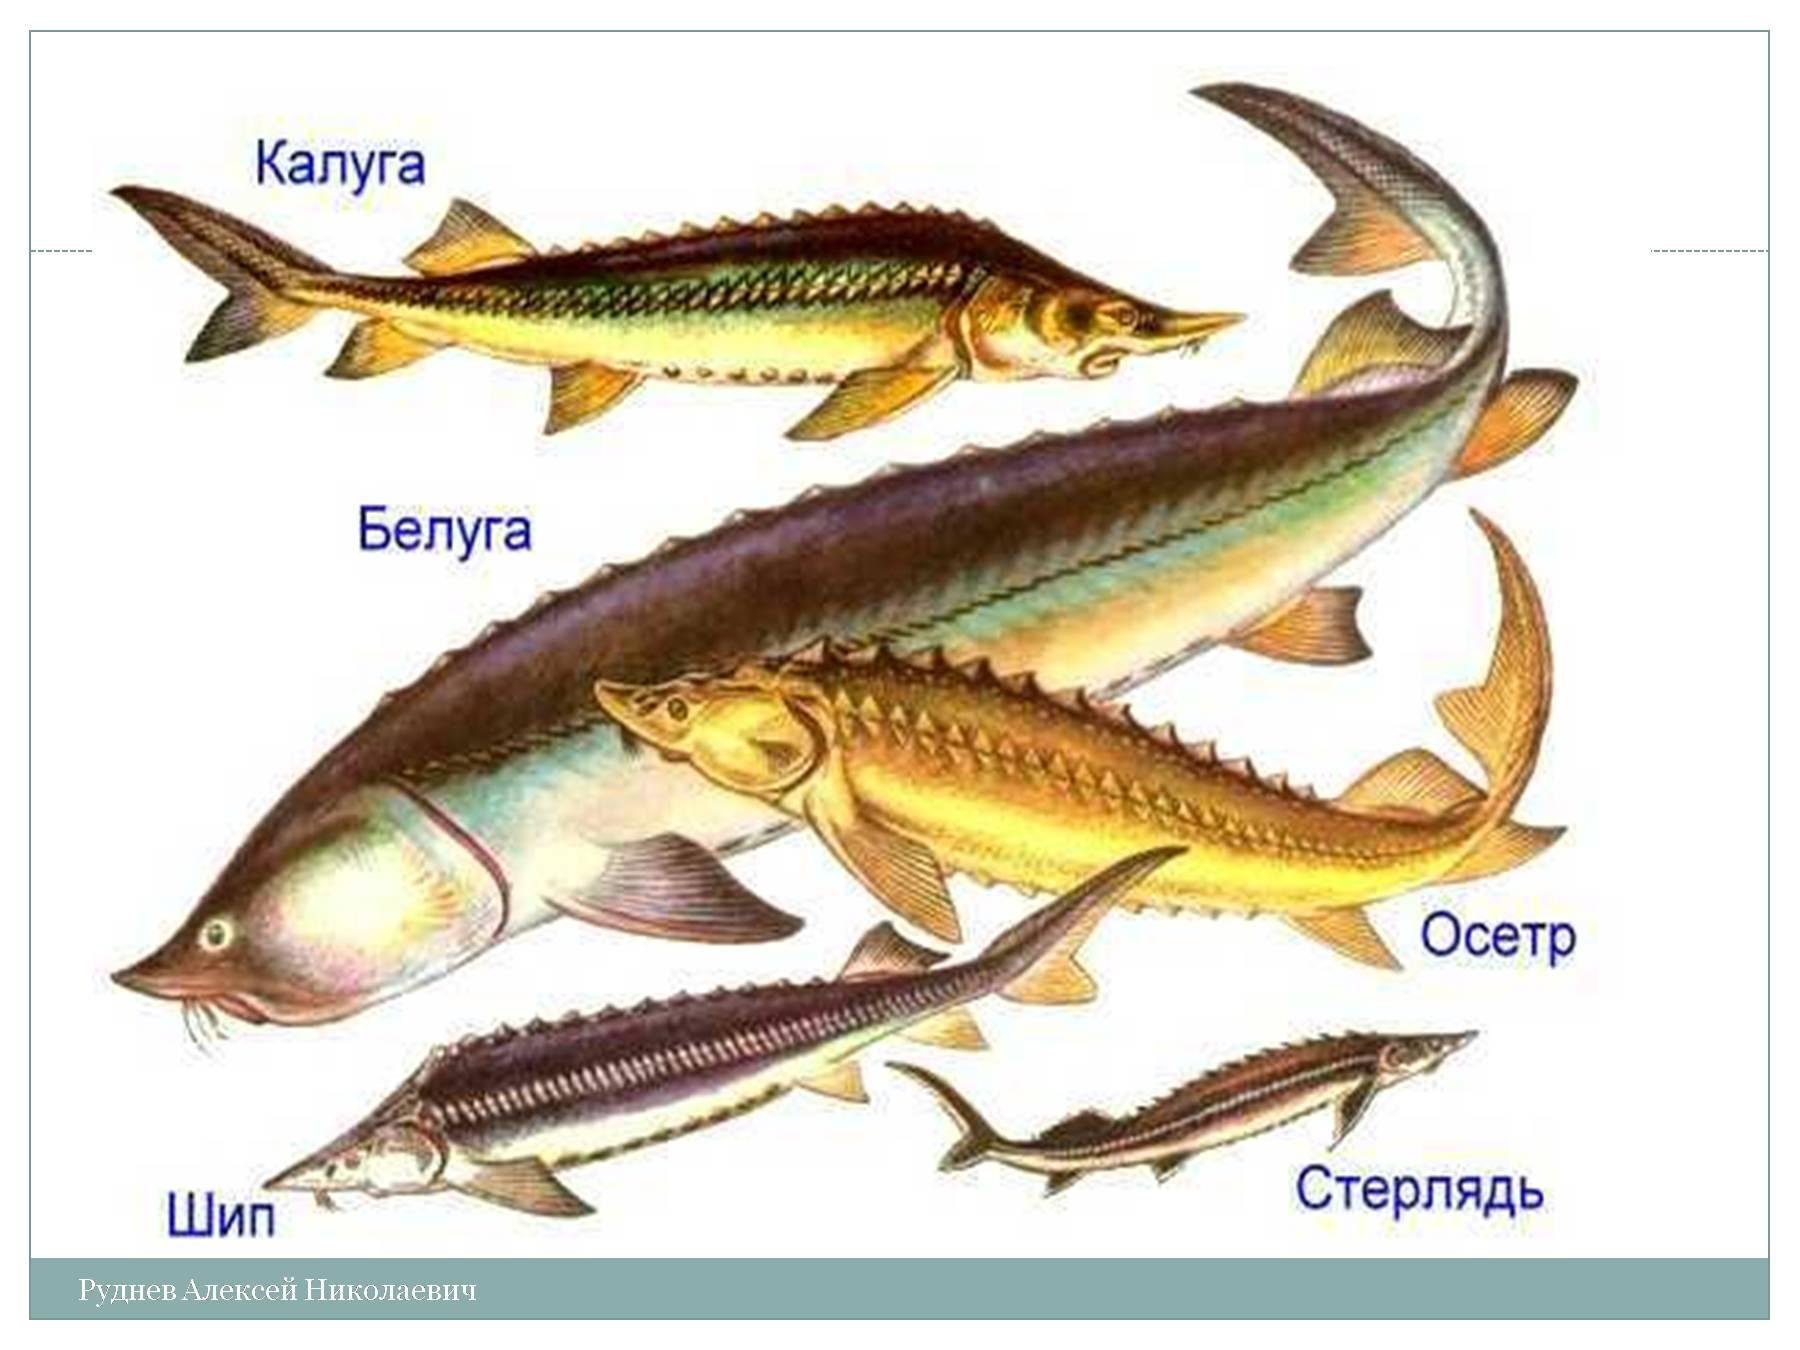 Осетрообразные группа рыб